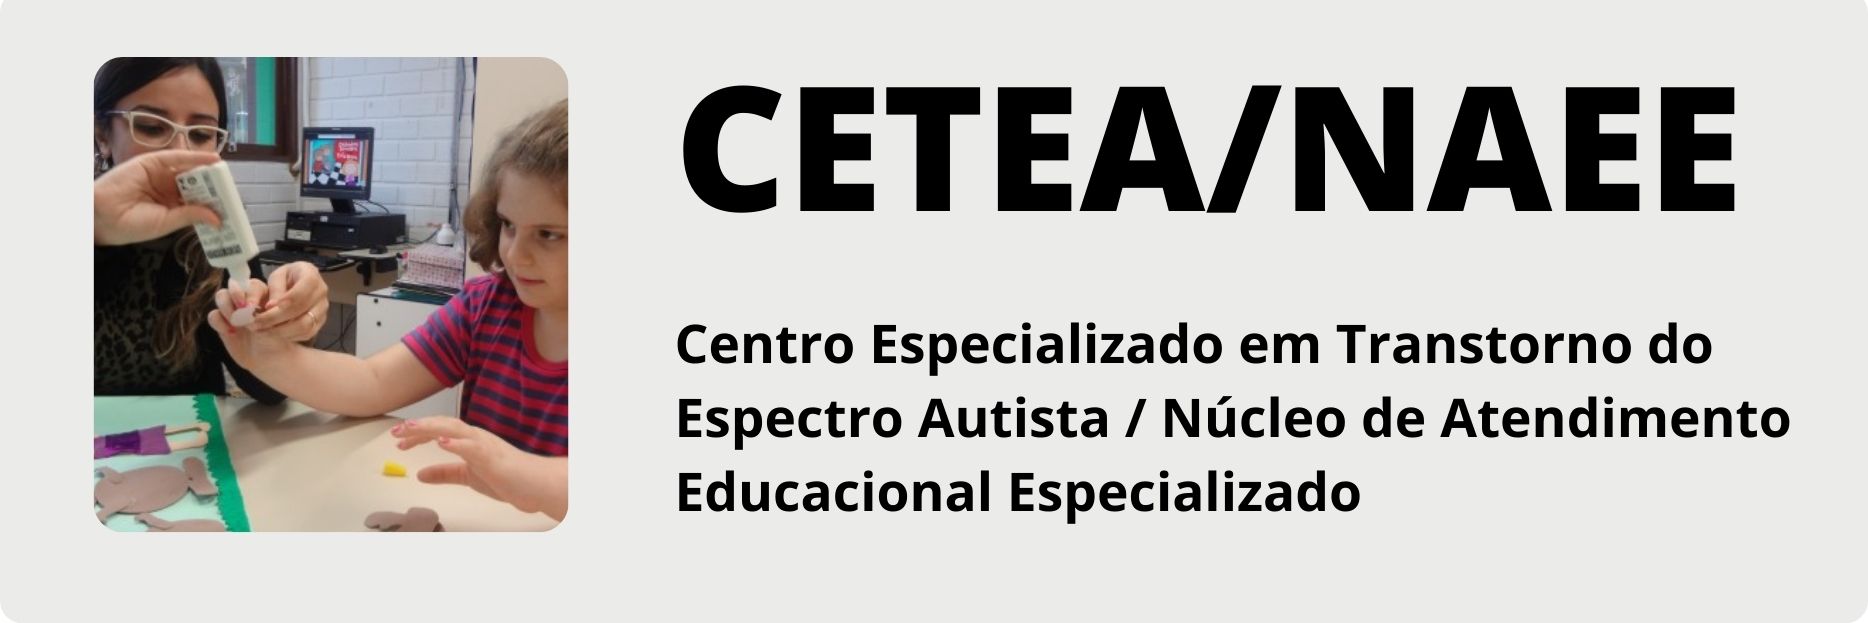 Imagem de uma menina ao lado de professora e texto: CETEA/NAEE Centro Especializado em Transtorno do Espectro Autista / Núcleo de Atendimento Educacional Especializado